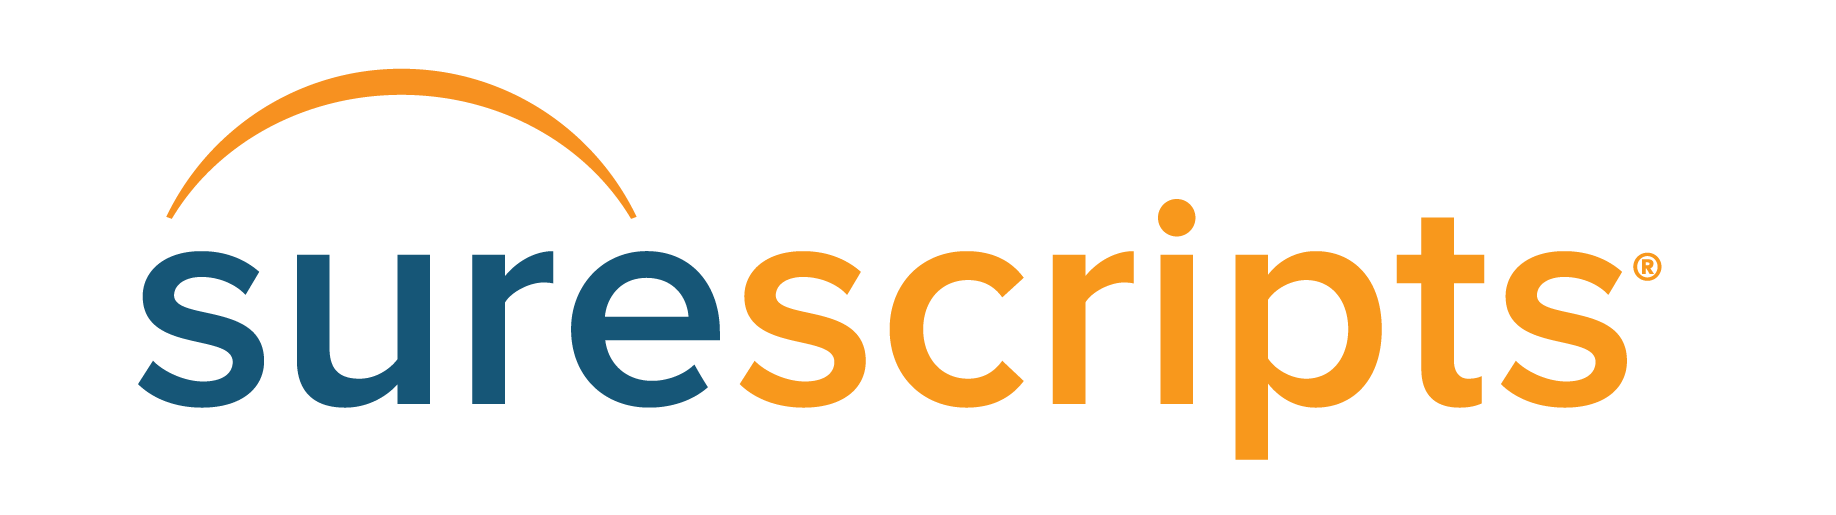 surescripts-logo-highres